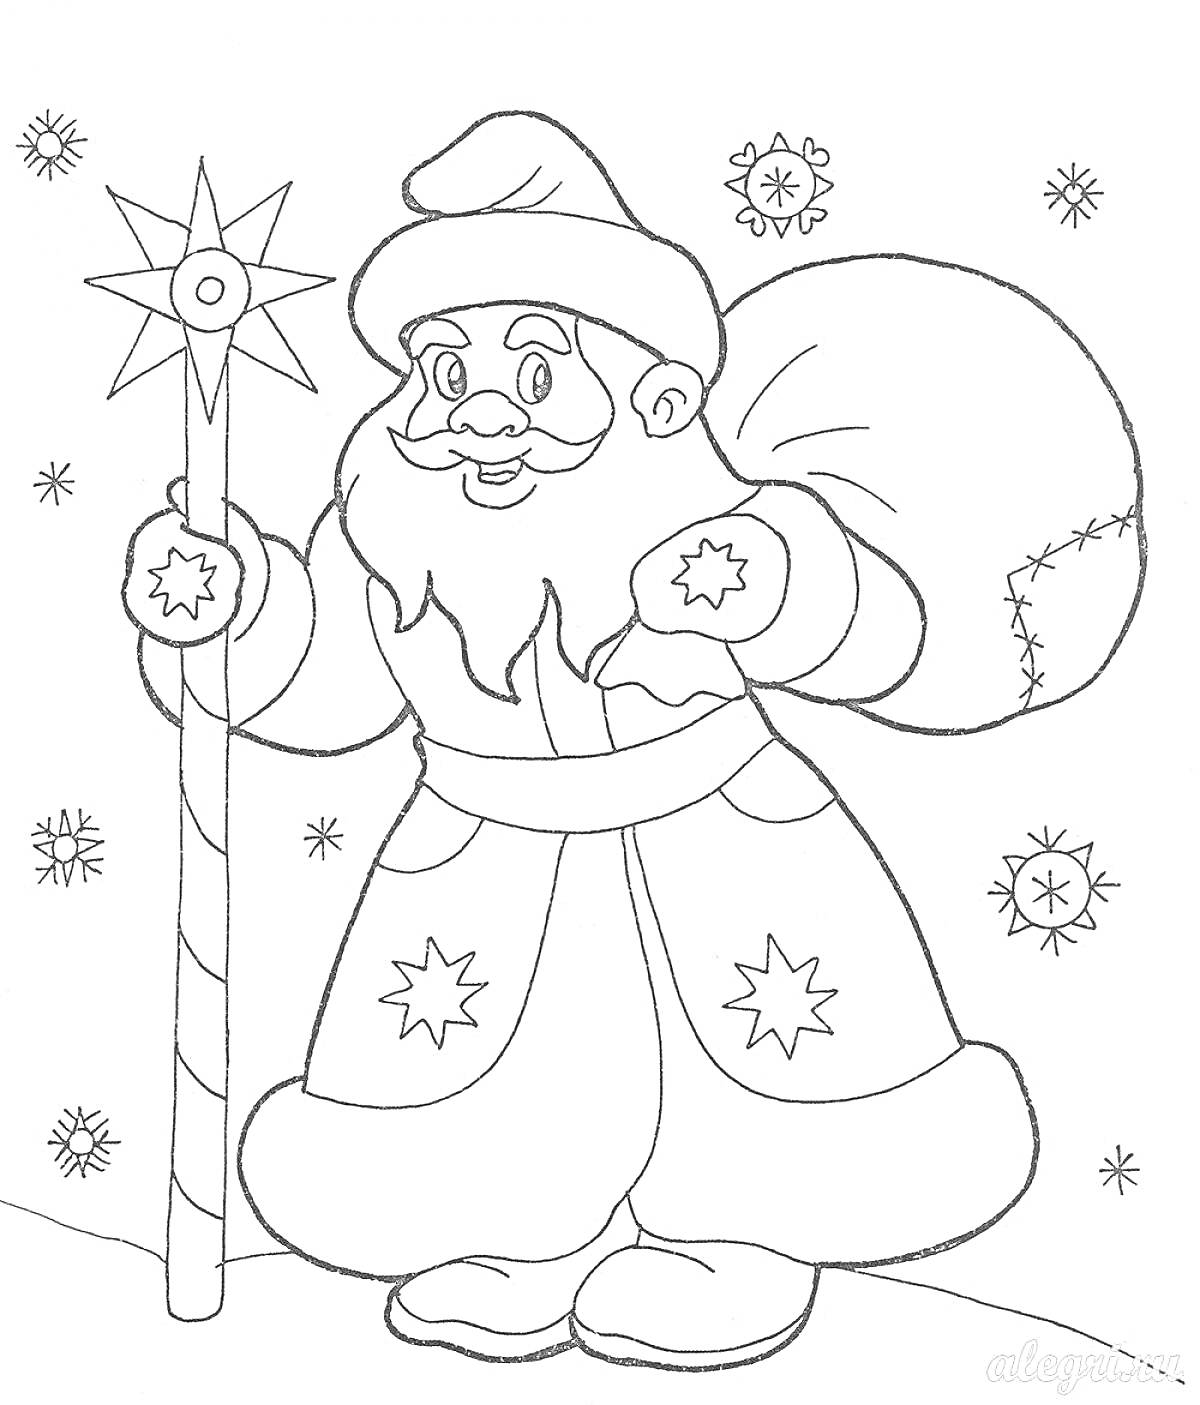 Раскраска Дед Мороз с посохом, мешком подарков и снежинками